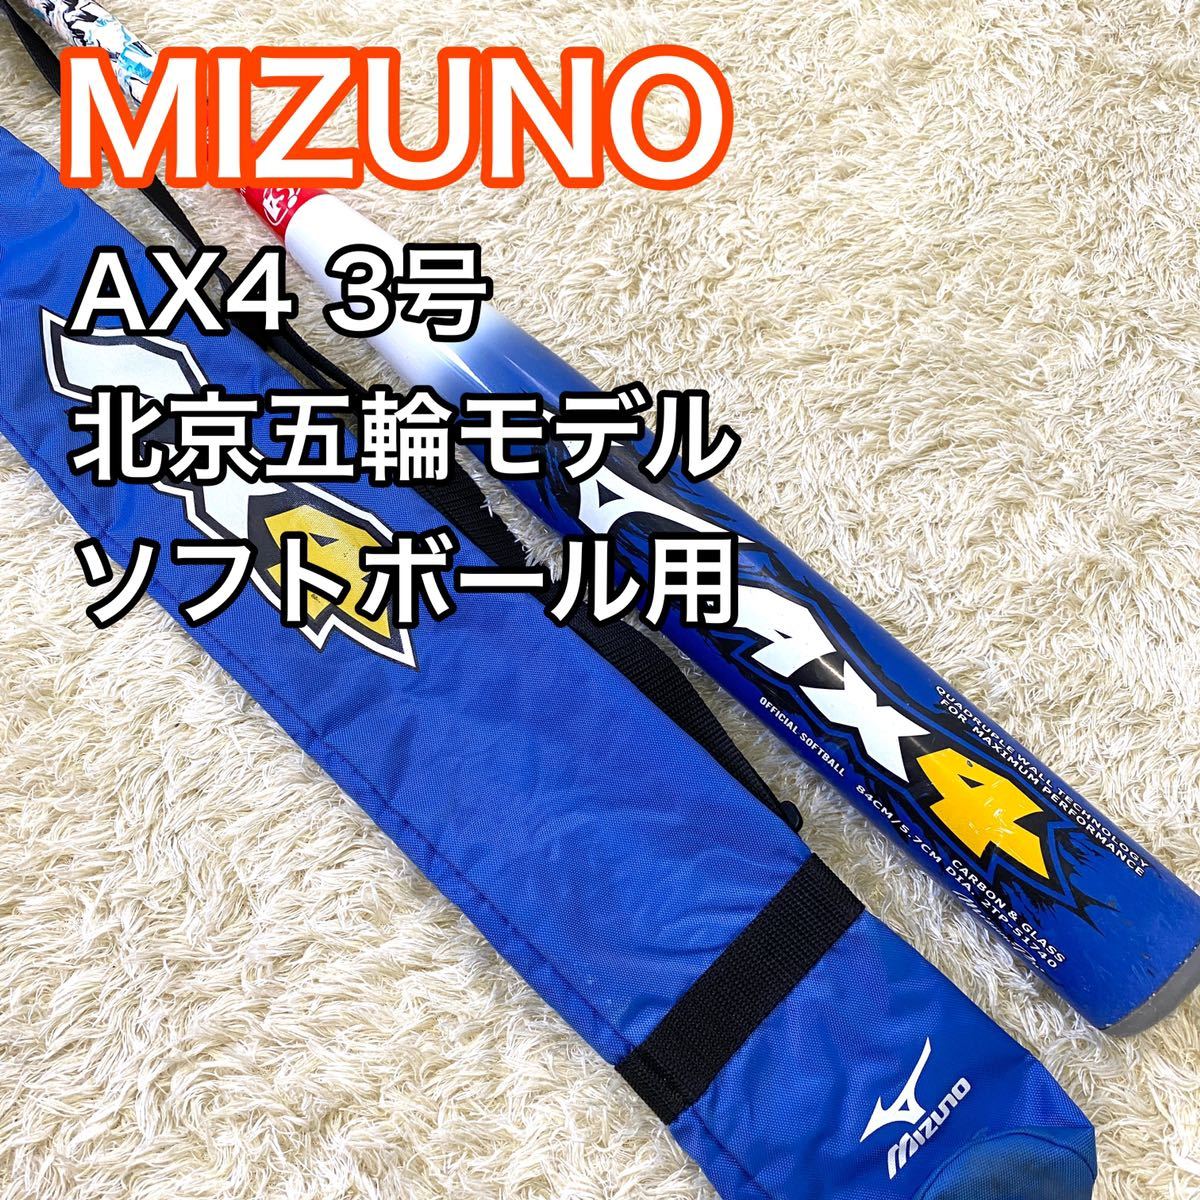 ミズノ バット AX4 ソフトボール用 3号 北京オリンピックモデル MIZUNO